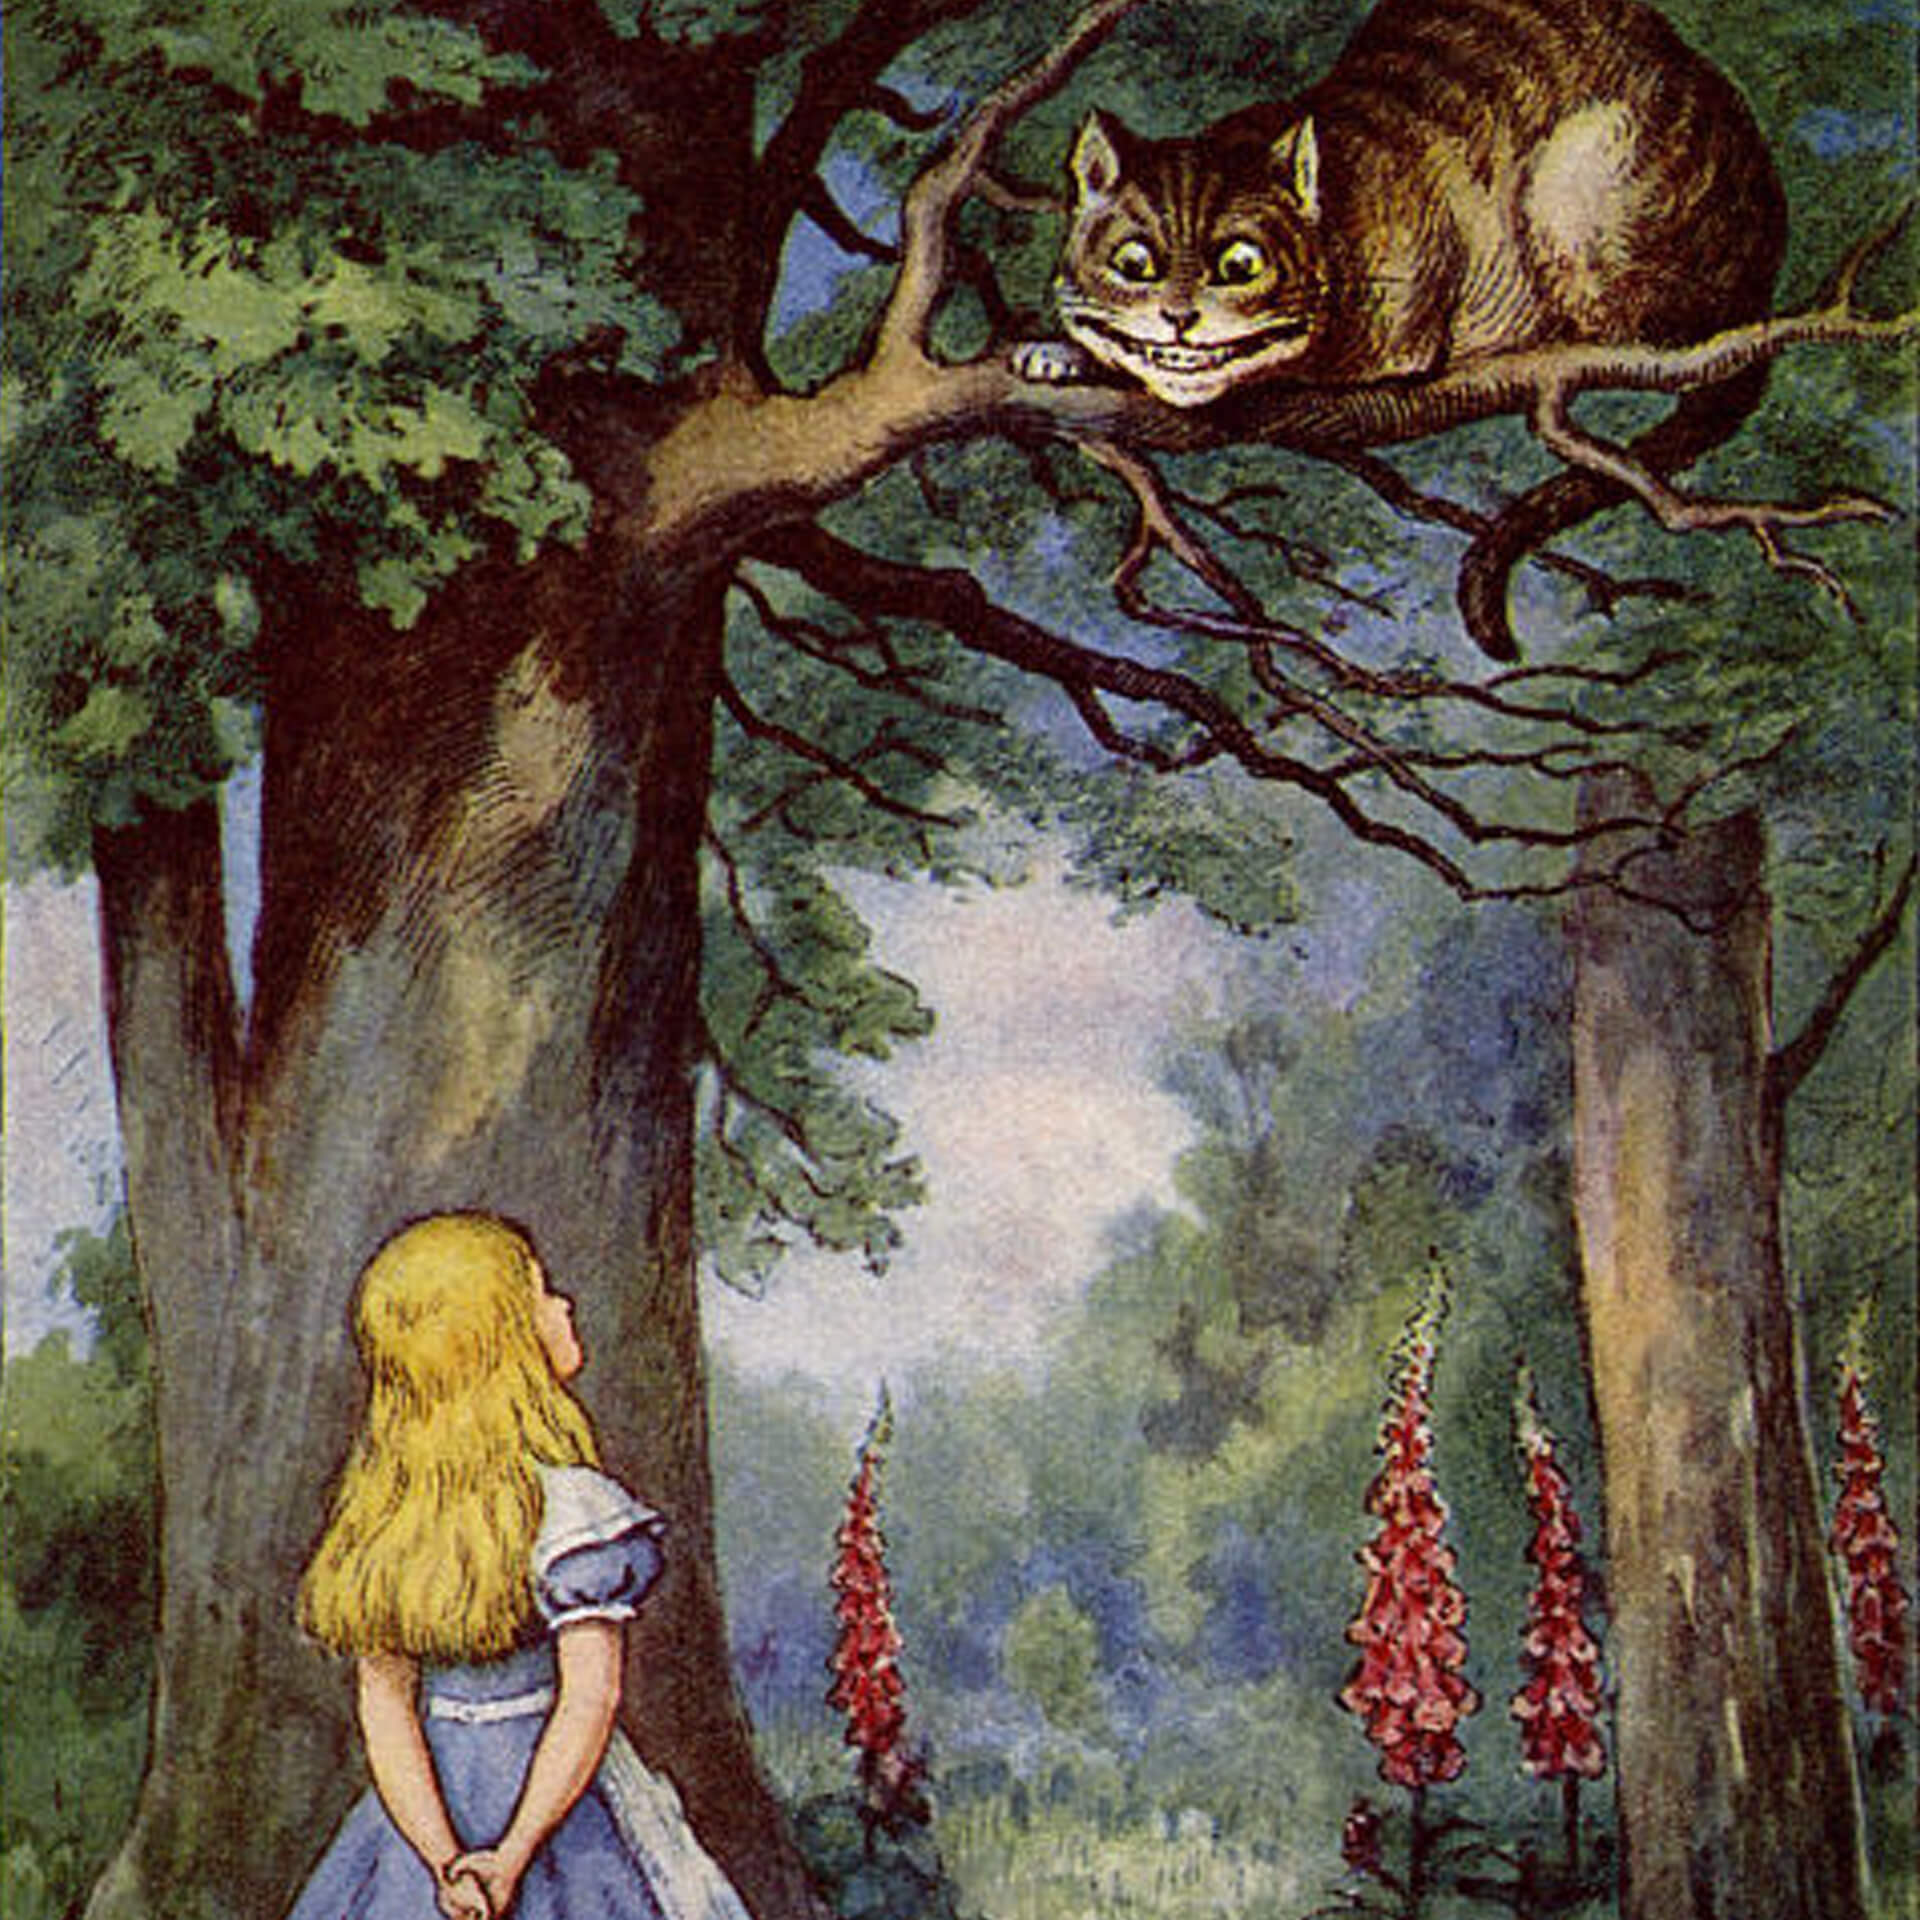 Meditating Meow Alice, Alice in Wonderland